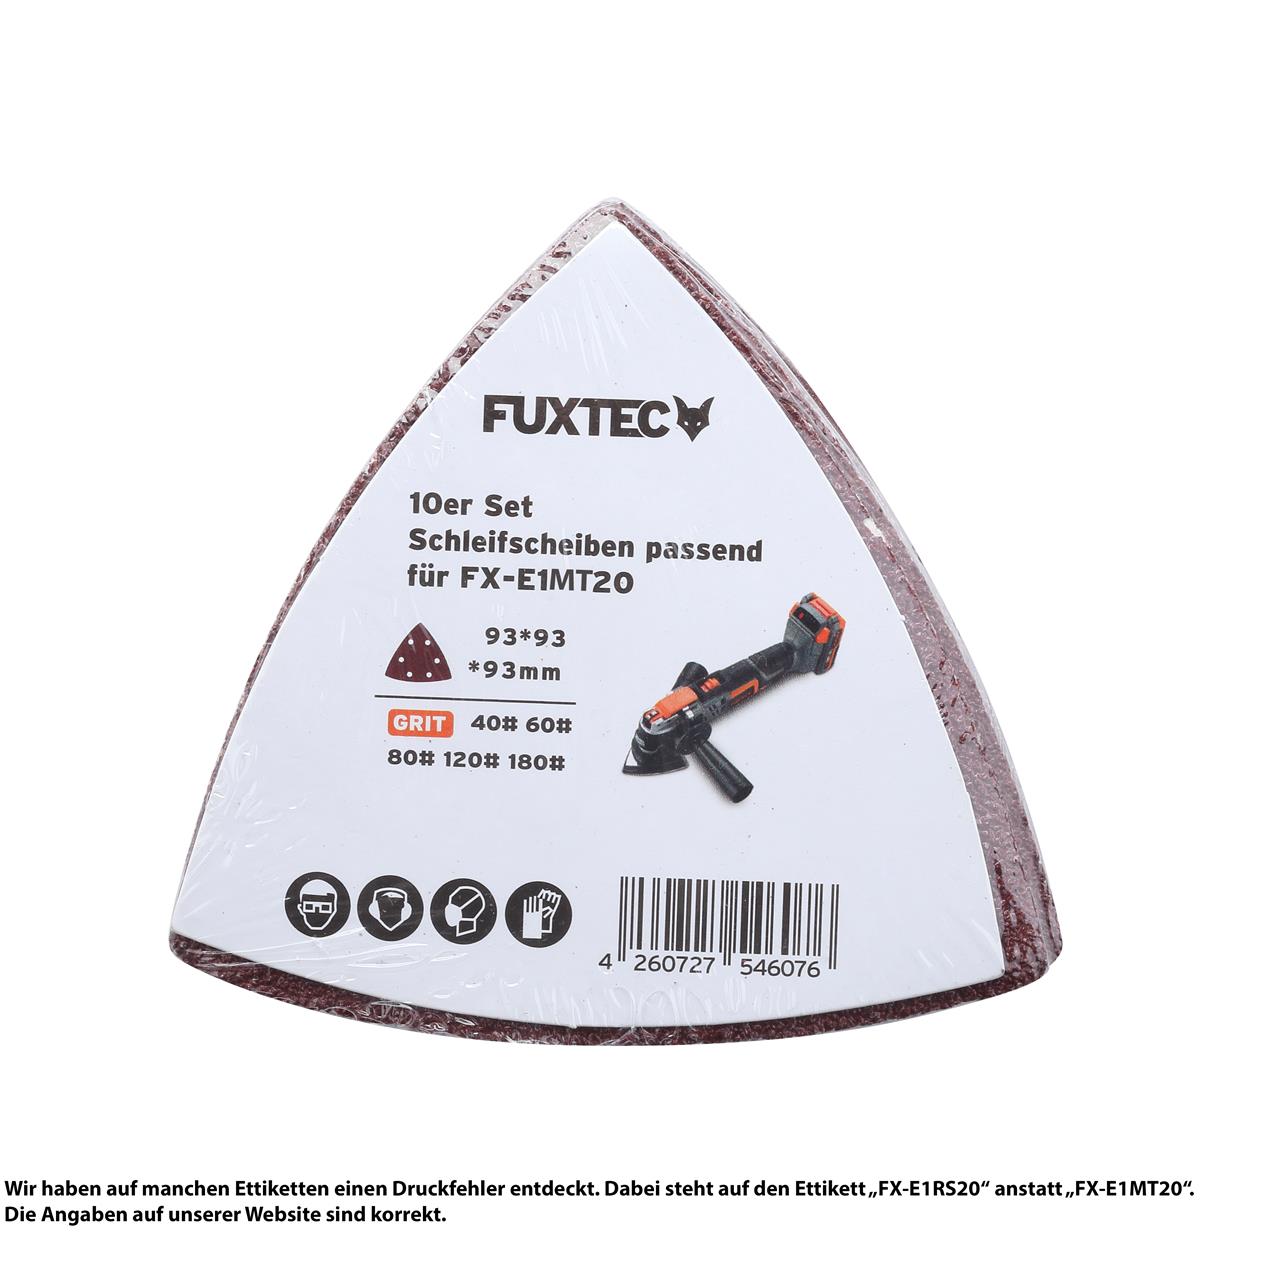 FUXTEC - Lot de 10 disques abrasifs 5 grains différents outil multifonction pour FX-E1MT20